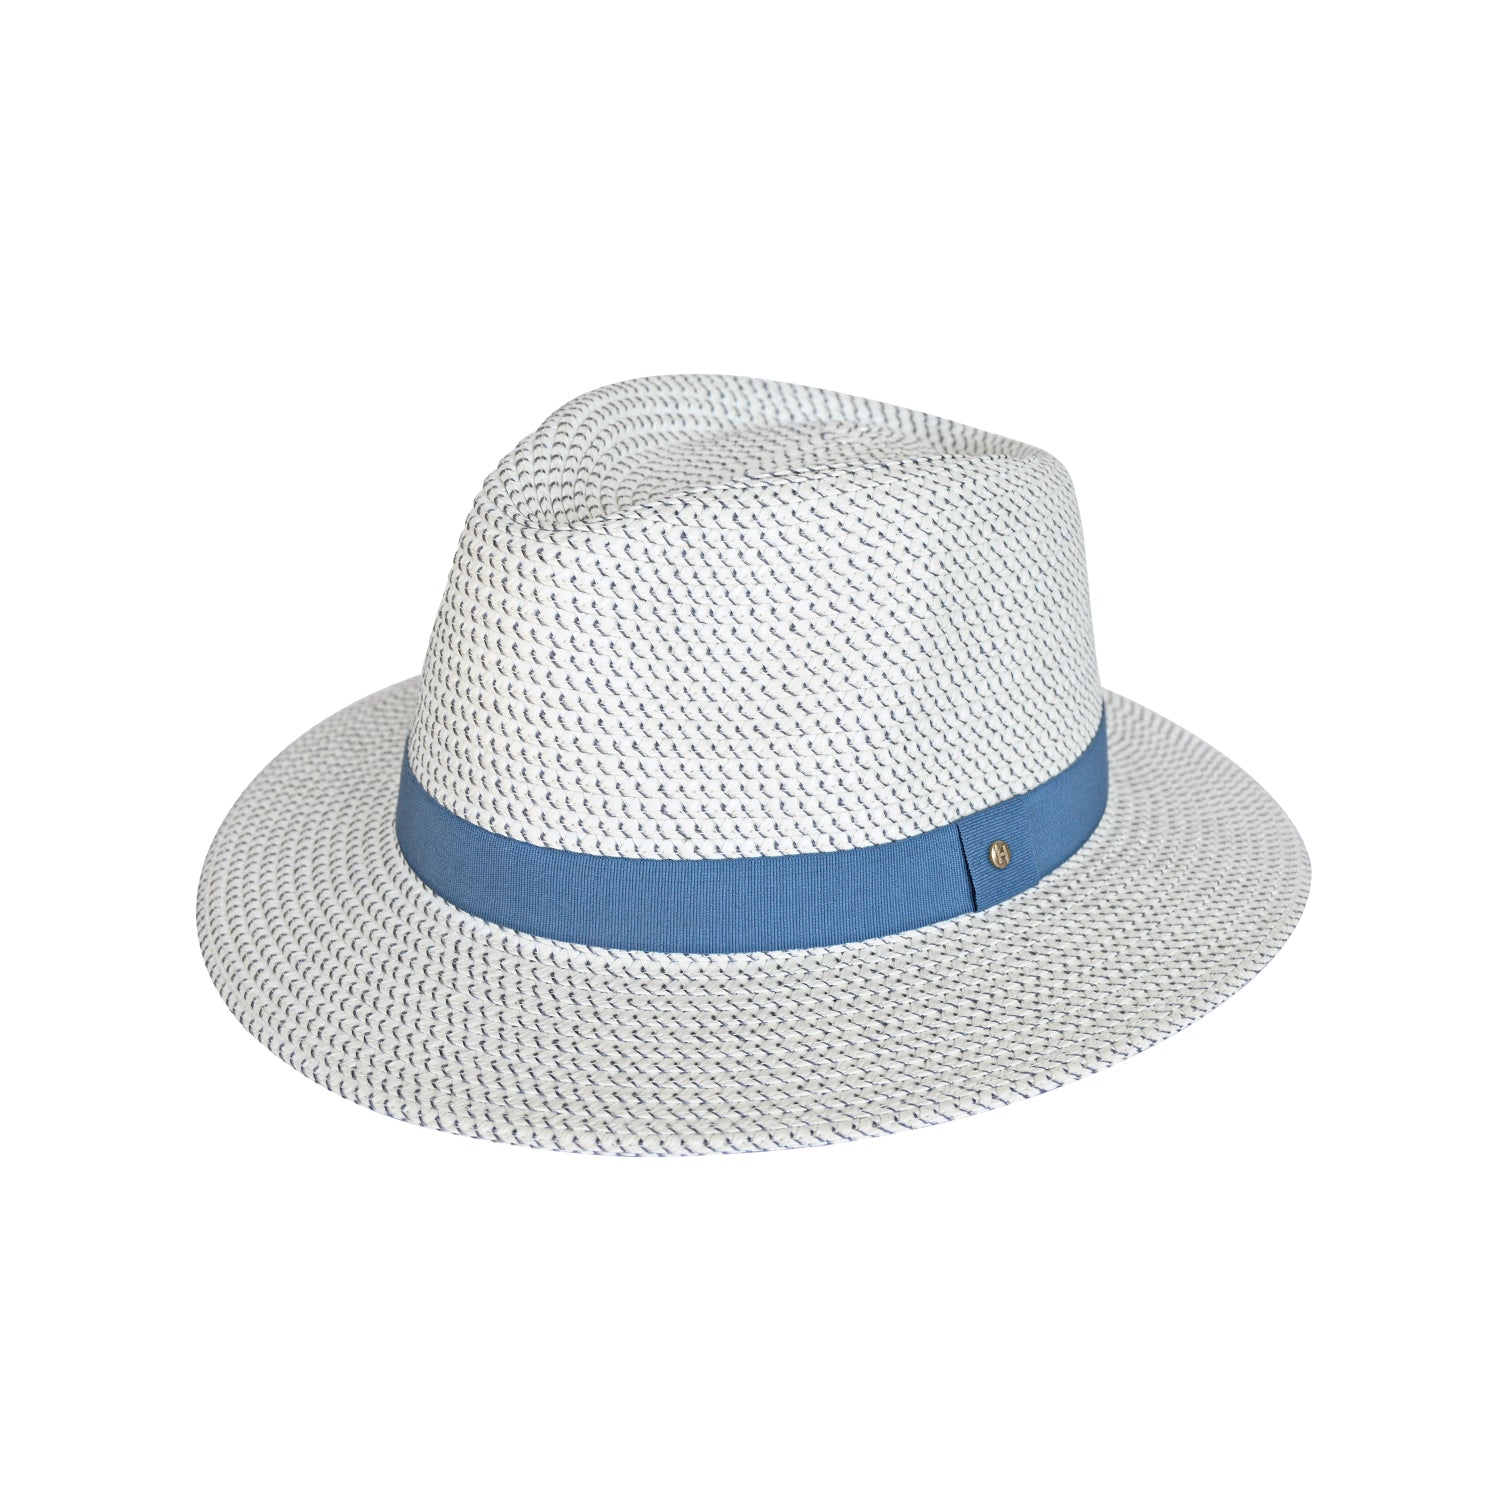 DRESCOKLJ Waterproof Outdoor Sun Hat Men's UV Protection Summer